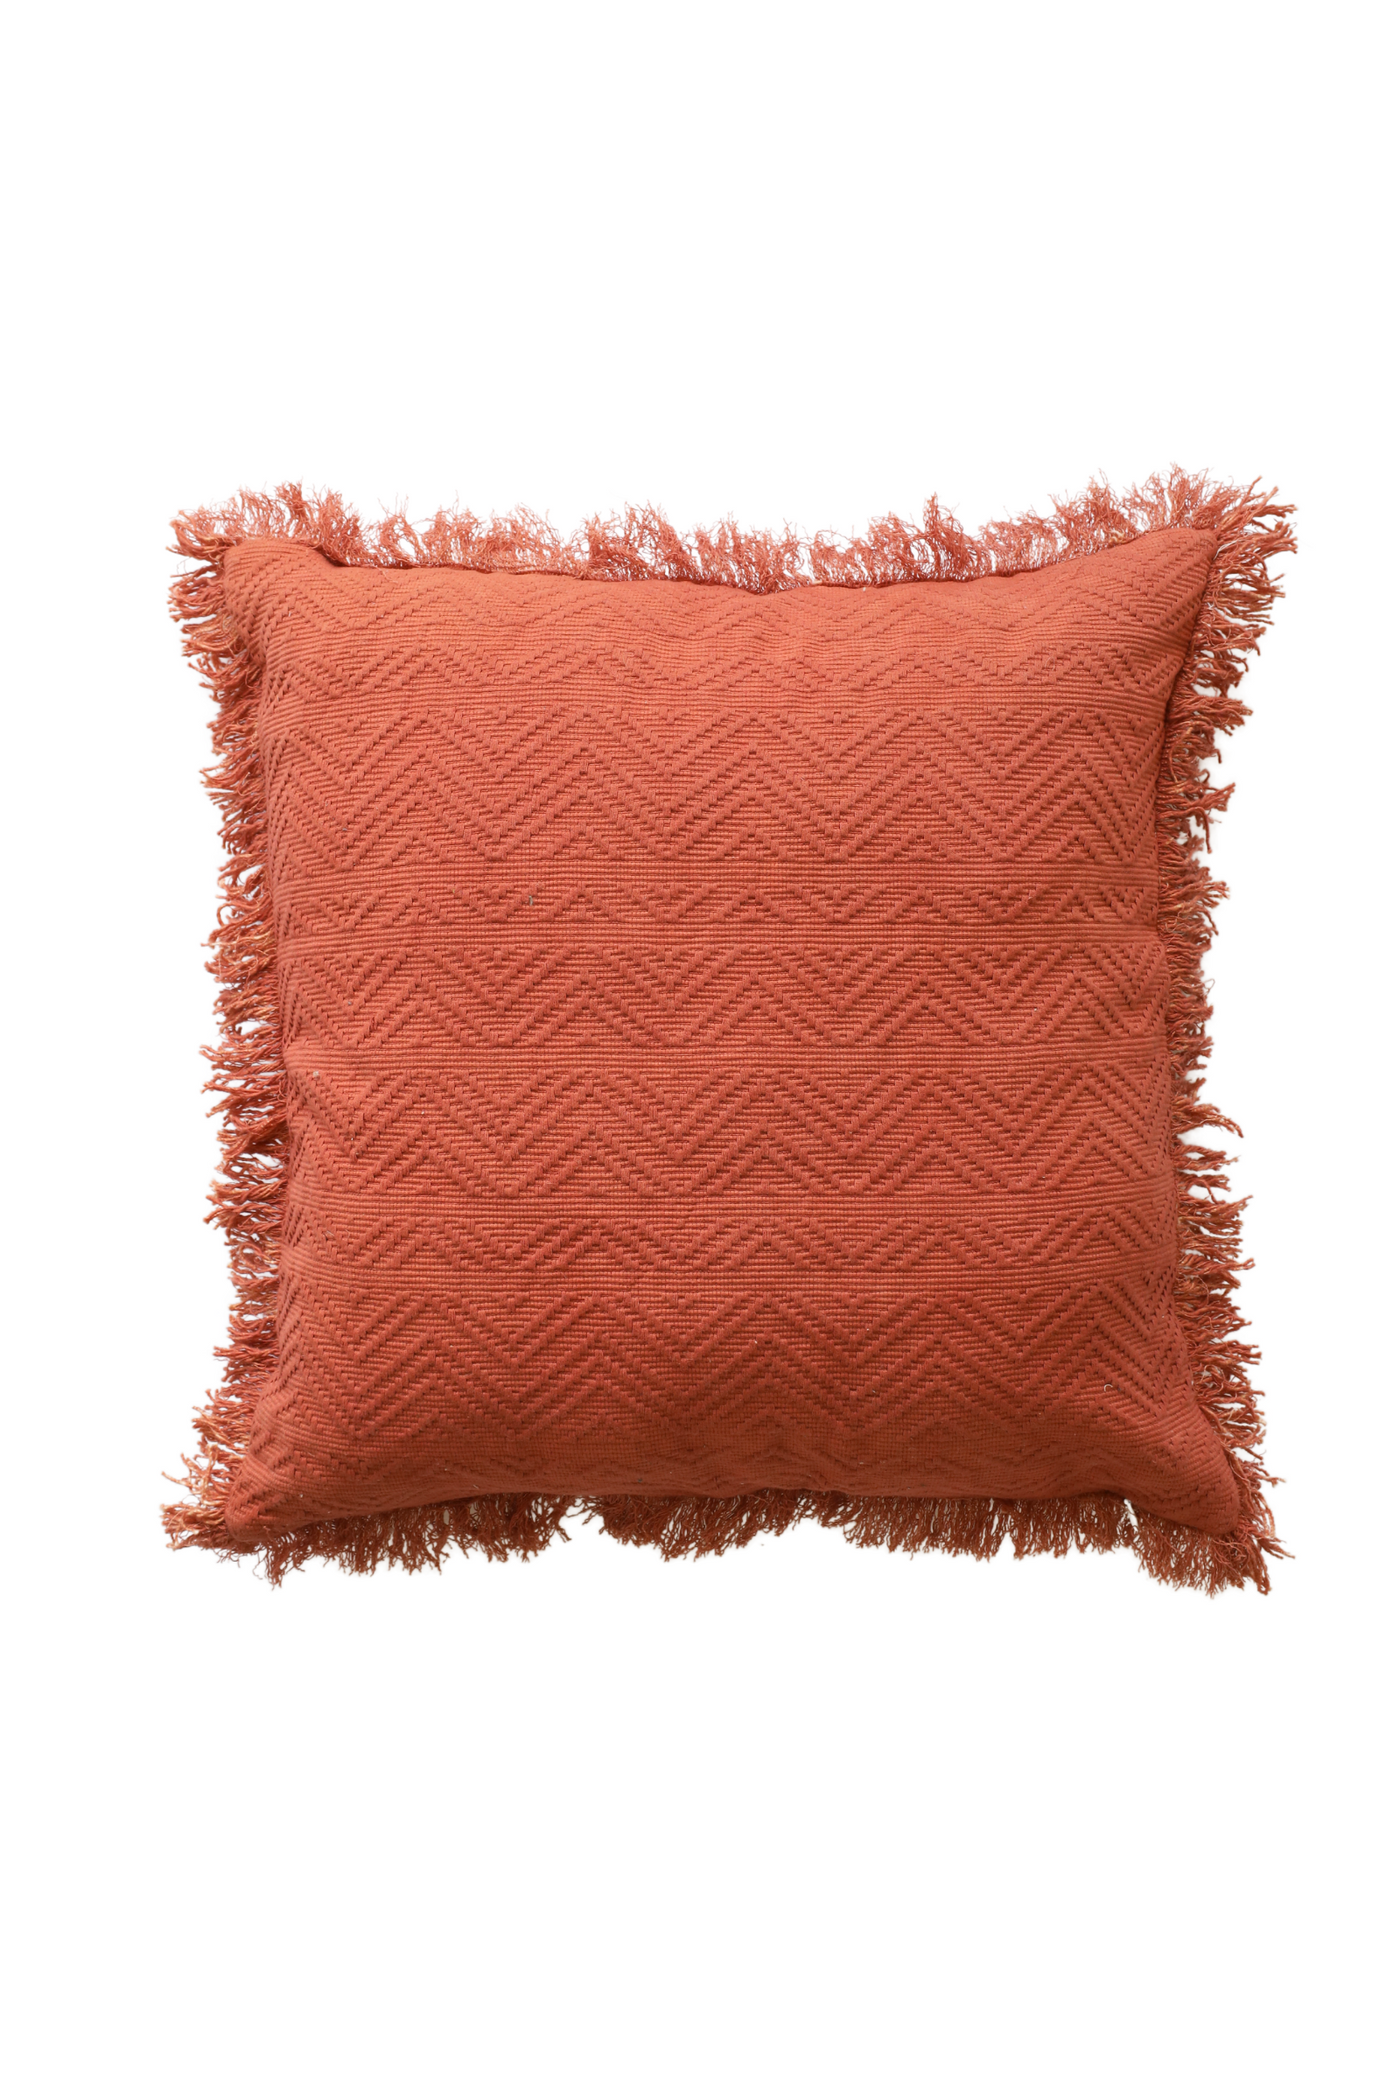 Terracotta cushion